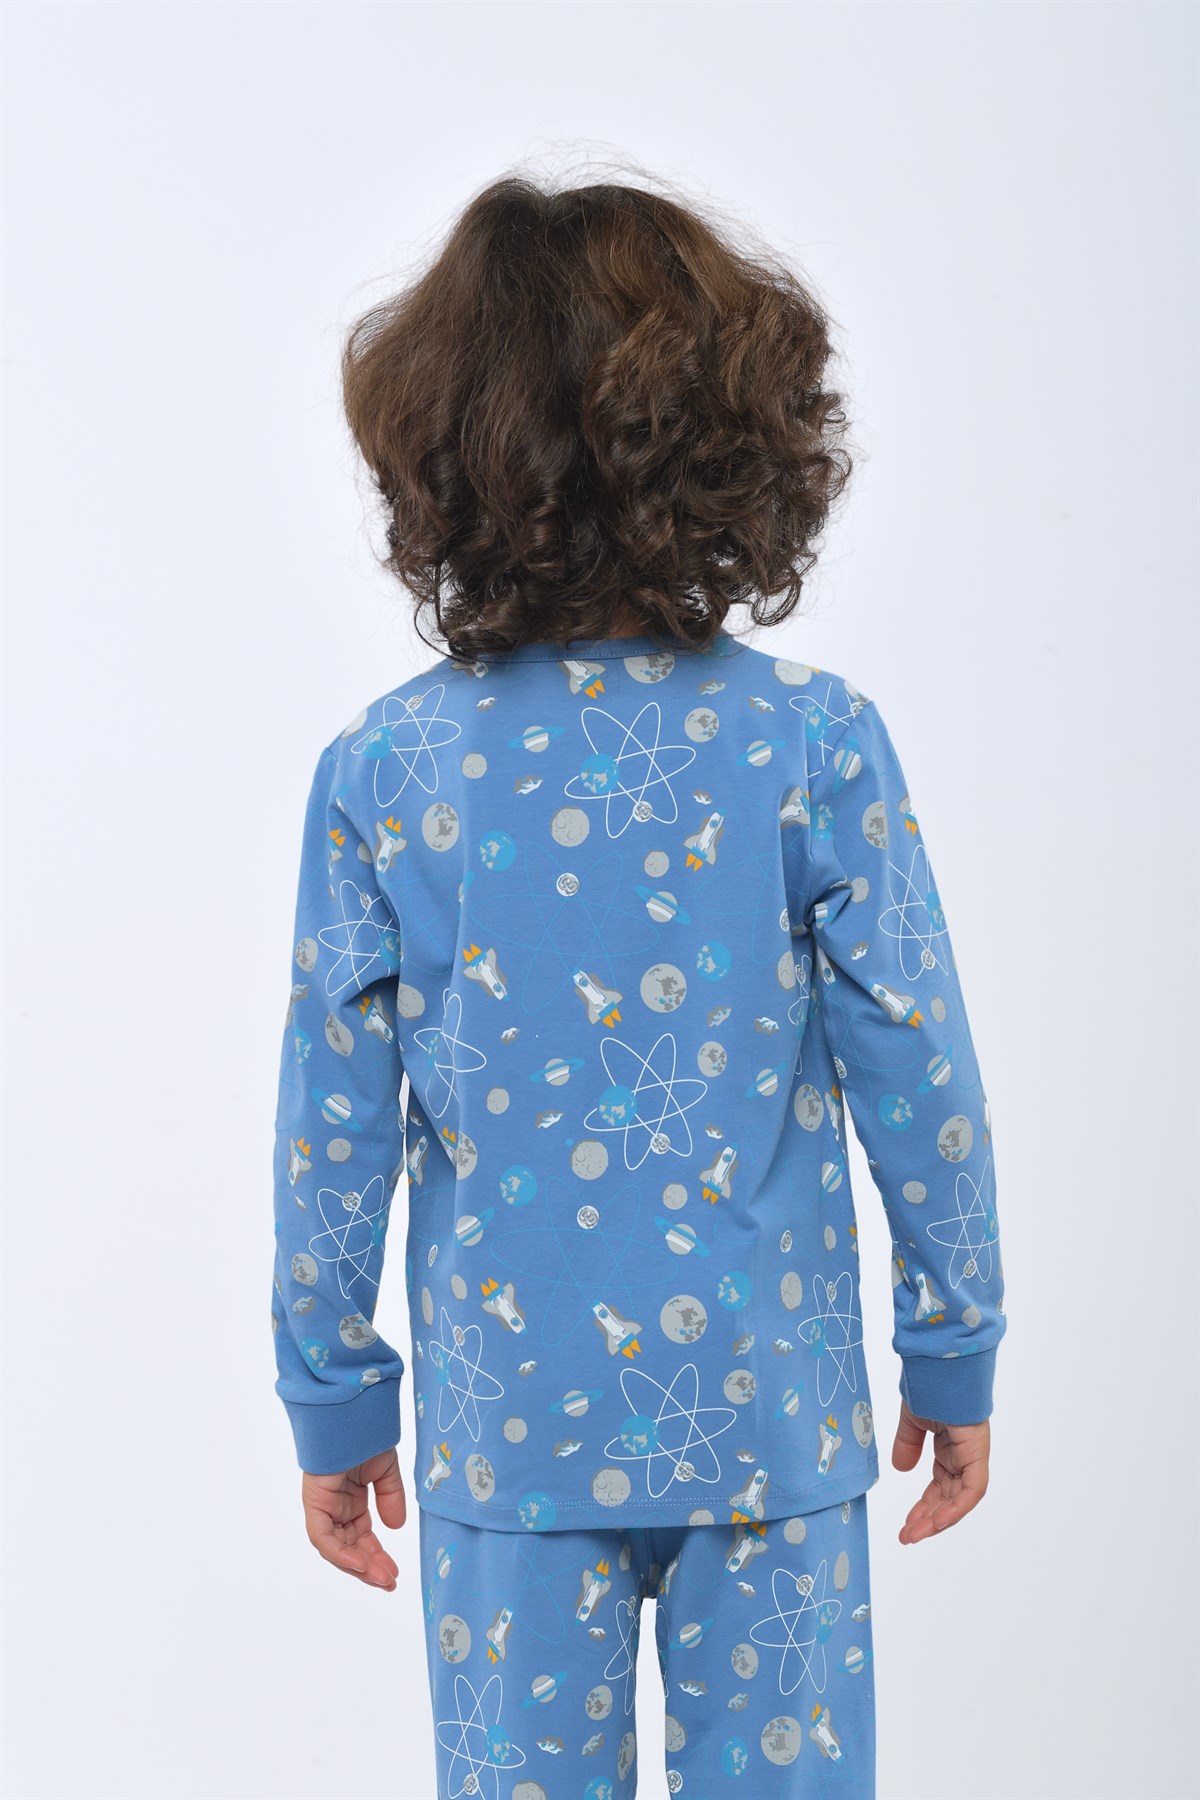 Space Erkek Çocuk Pijama Takımı İNDİGO